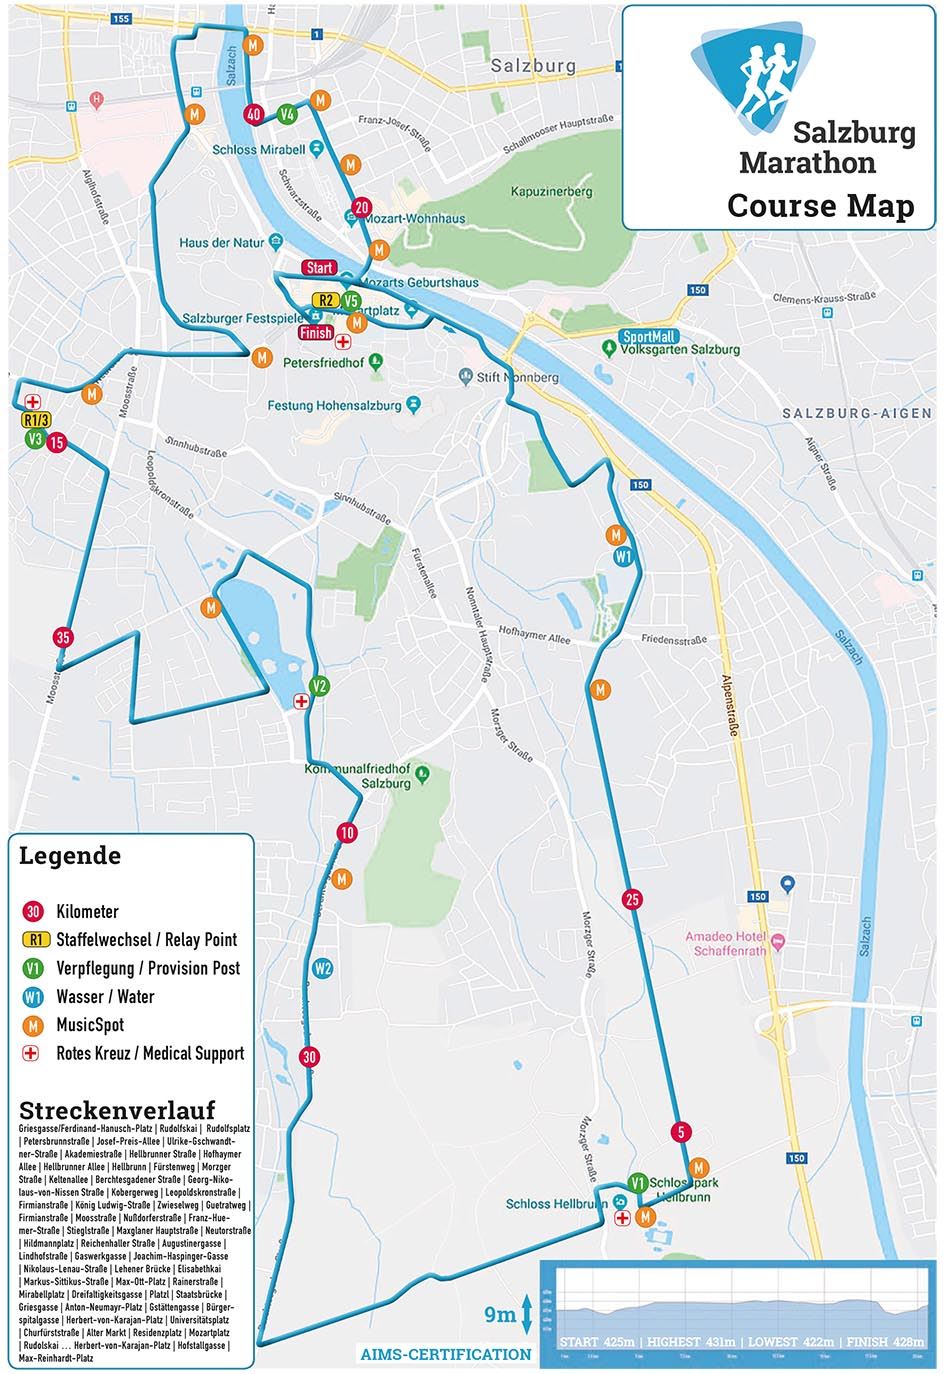 Salzburg Marathon Route Map